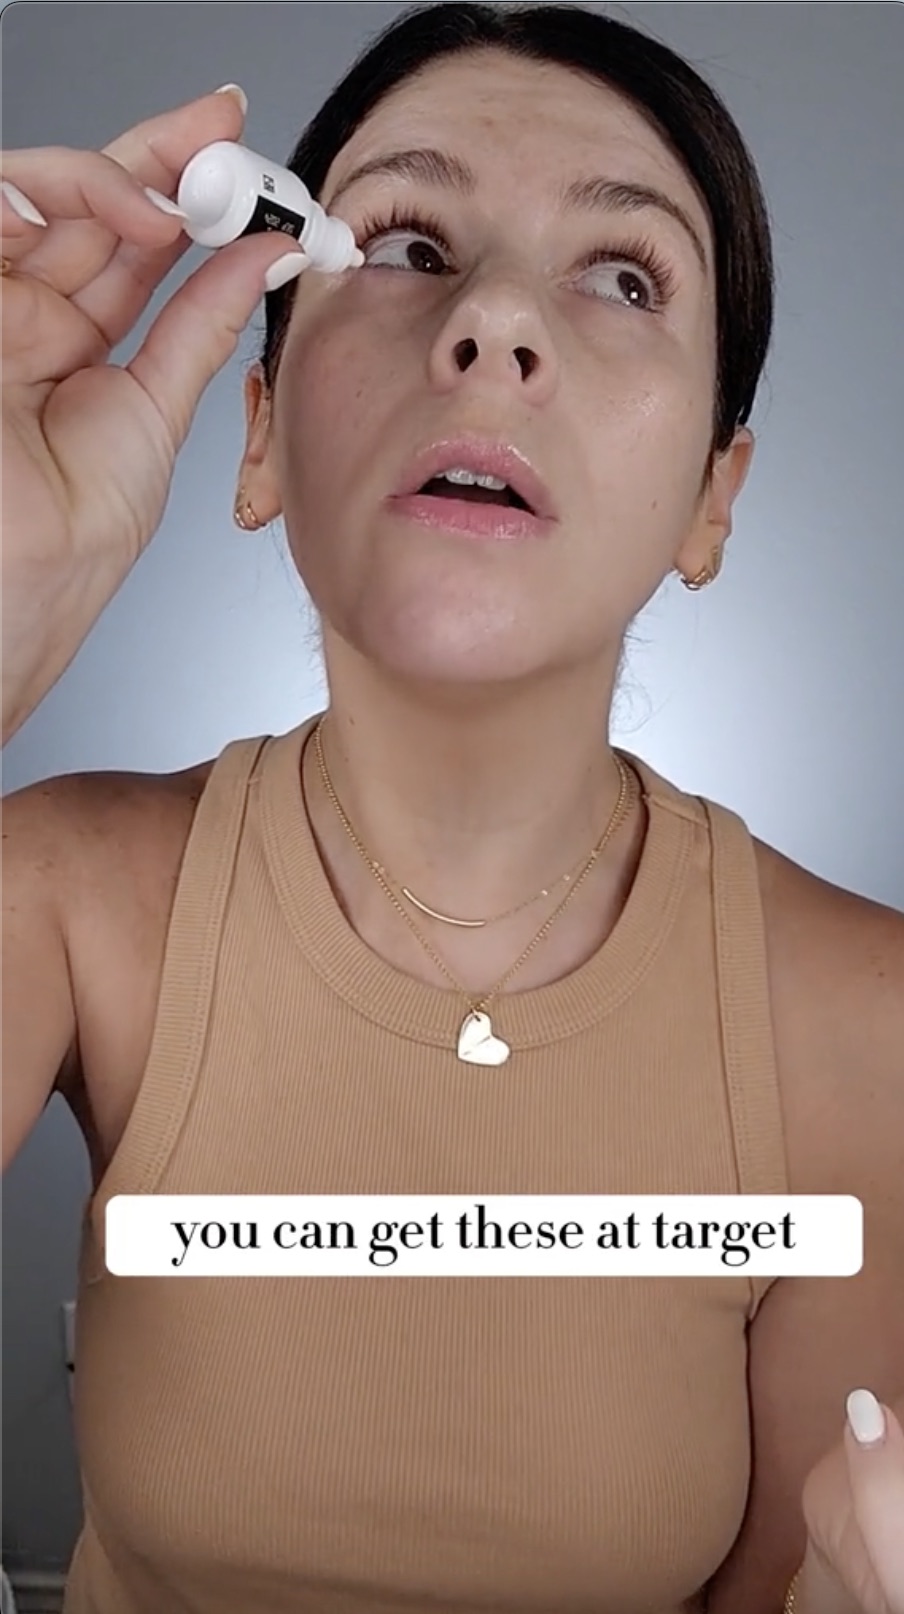 Elle a dévoilé son secret de beauté le mieux gardé : les gouttes pour les yeux Lumify à prix abordable de Target.